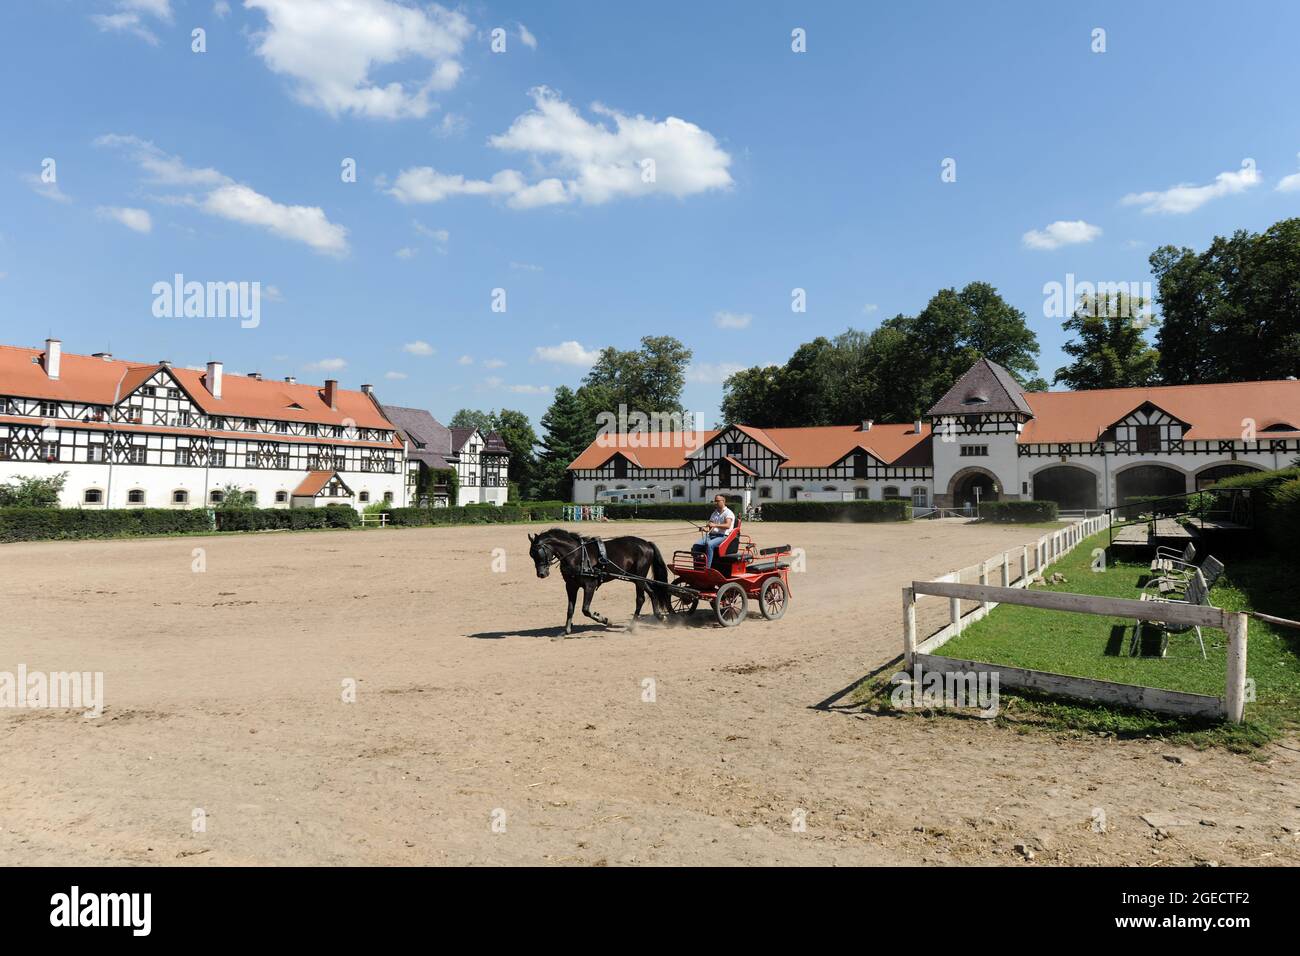 Ksiaz Stud Farm, homme d'entraînement de cheval dans l'arène extérieure avec des bâtiments stables derrière, Walbrzych, Basse Silésie, Pologne Banque D'Images